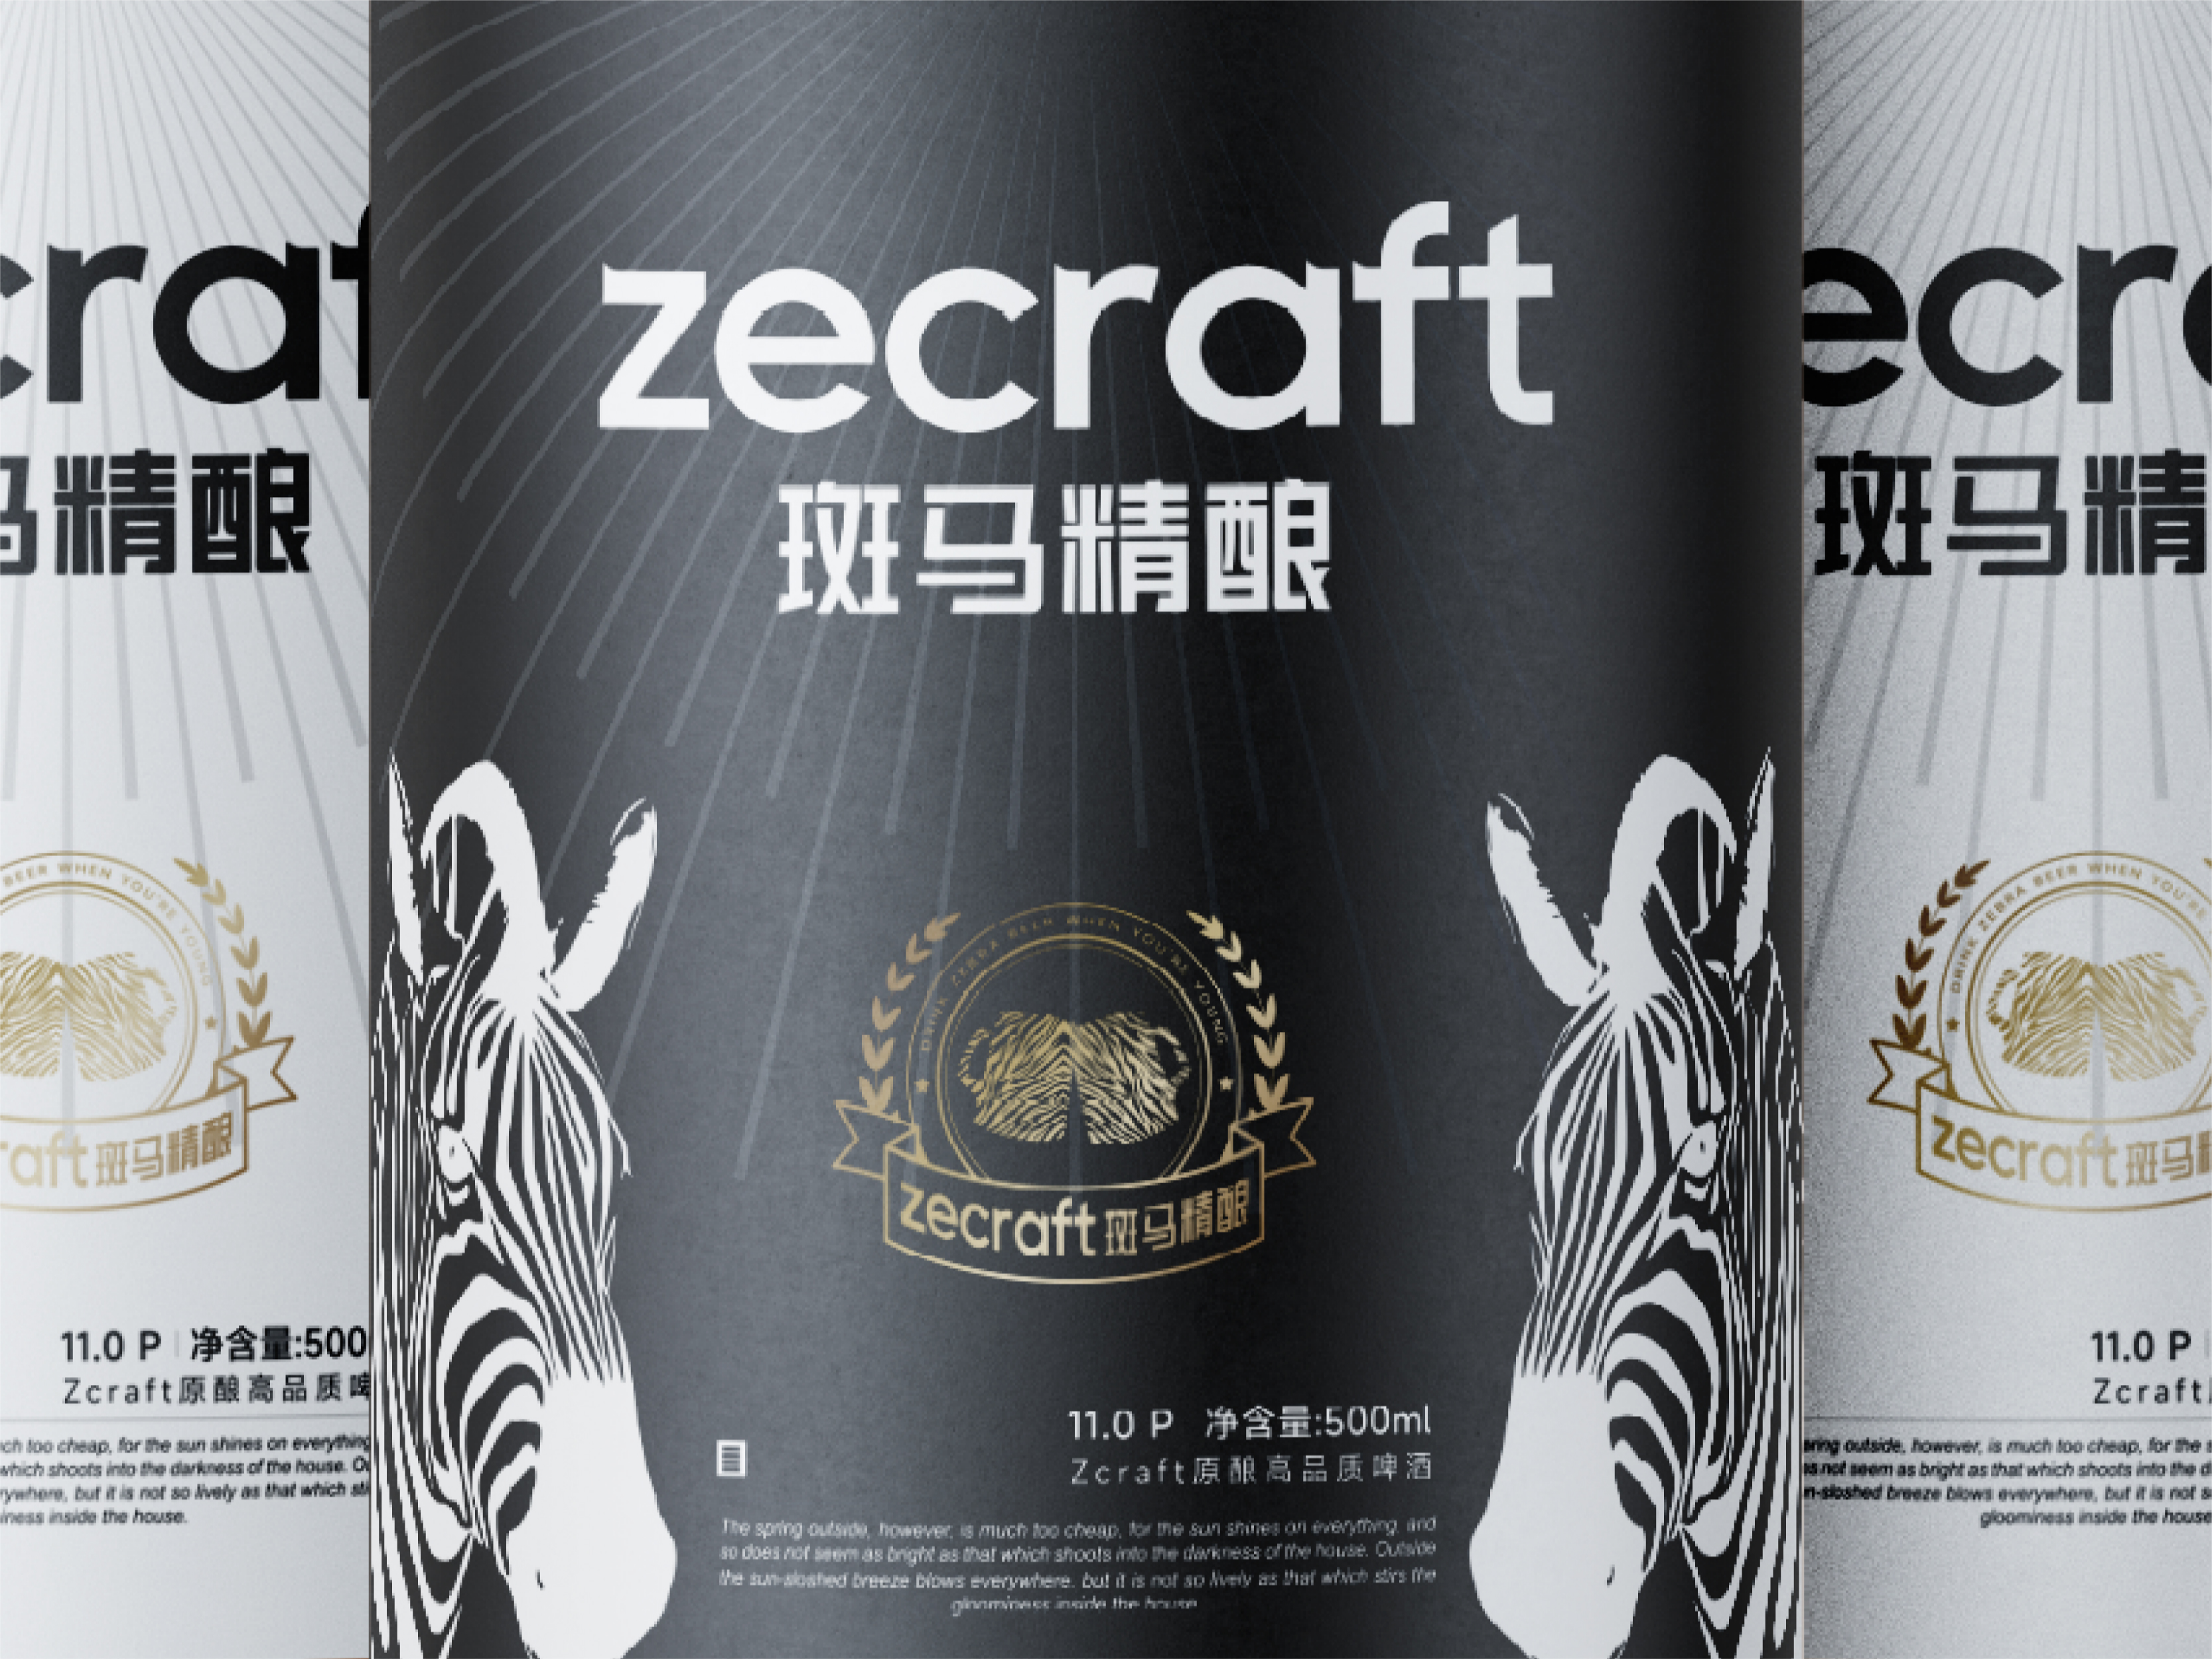 ZECRAFT& 斑马精酿 I 啤酒品牌视觉